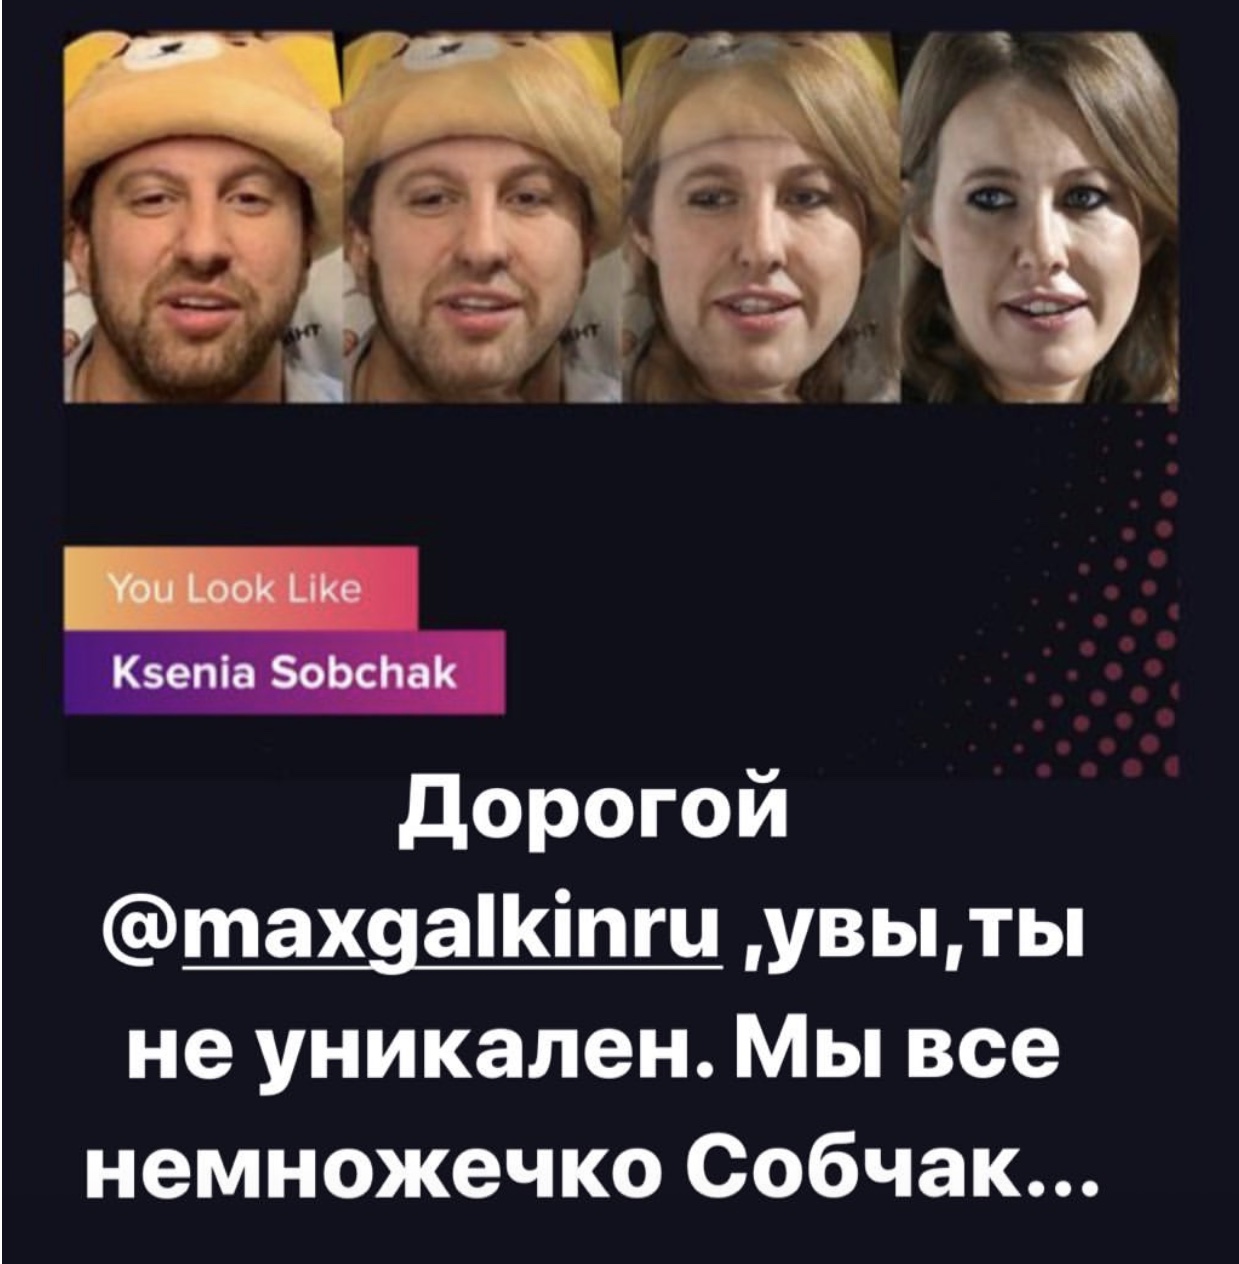 Это очень смешно: Максим Галкин превратился в Ксению Собчак и попросил номер Богомолова. Но ответил Виторган! 